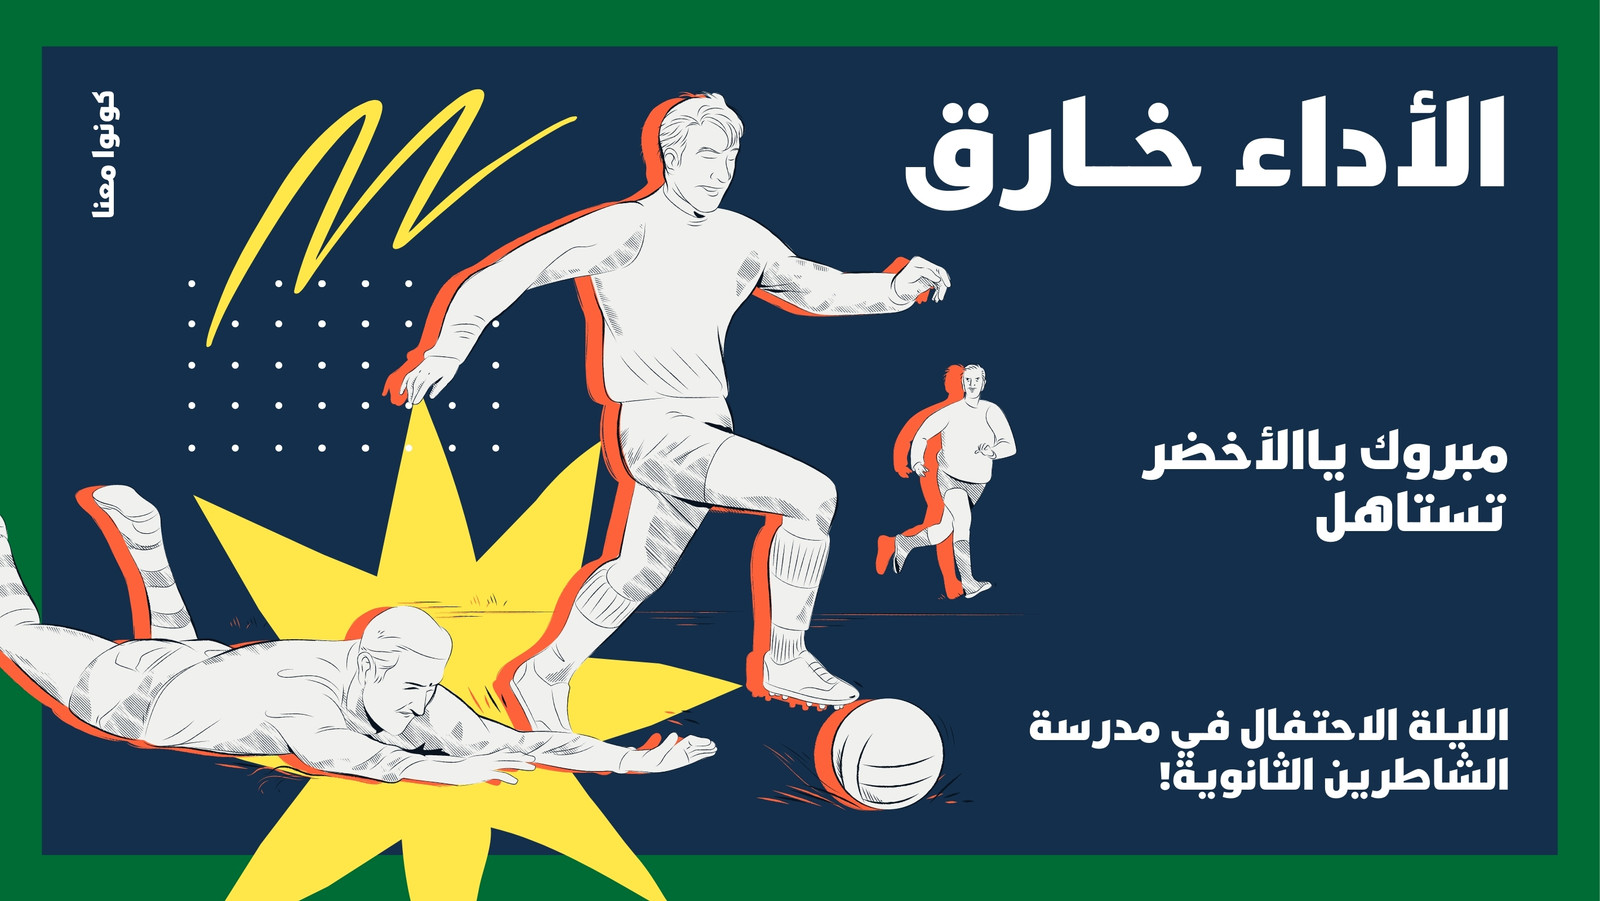 غلاف فيسبوك دعوة للاحتفال بفوز المنتخب السعودي